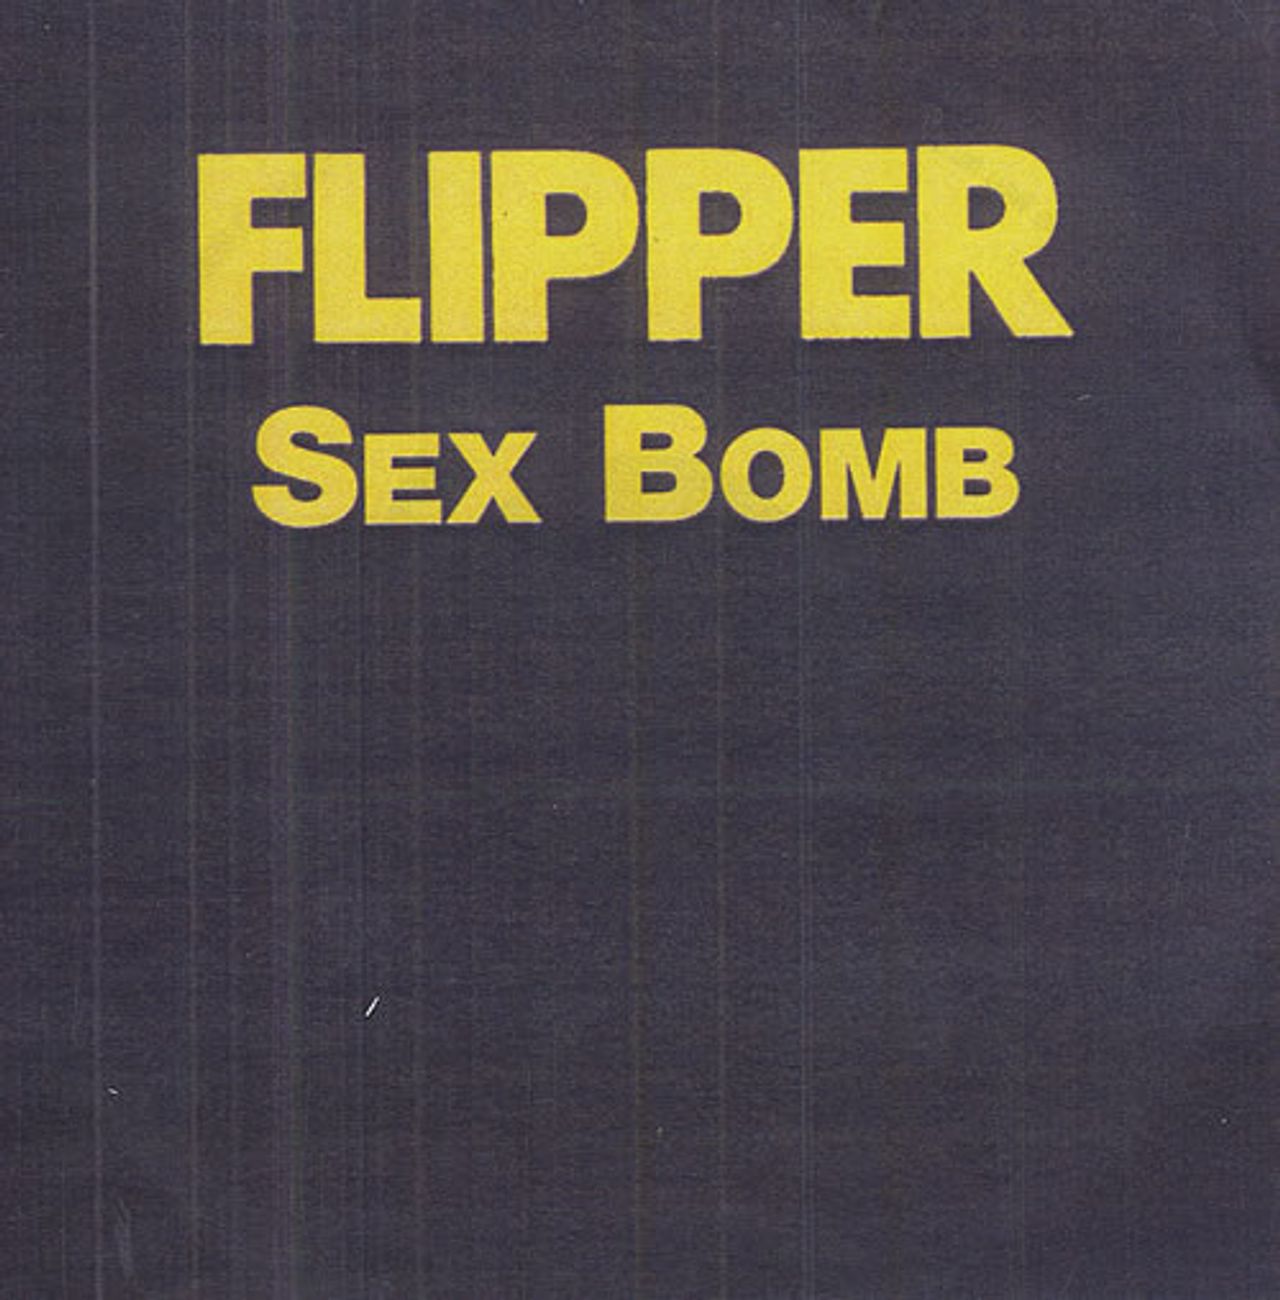 Flipper Sex Bomb UK Promo CD-R acetate CD-R ACETATE